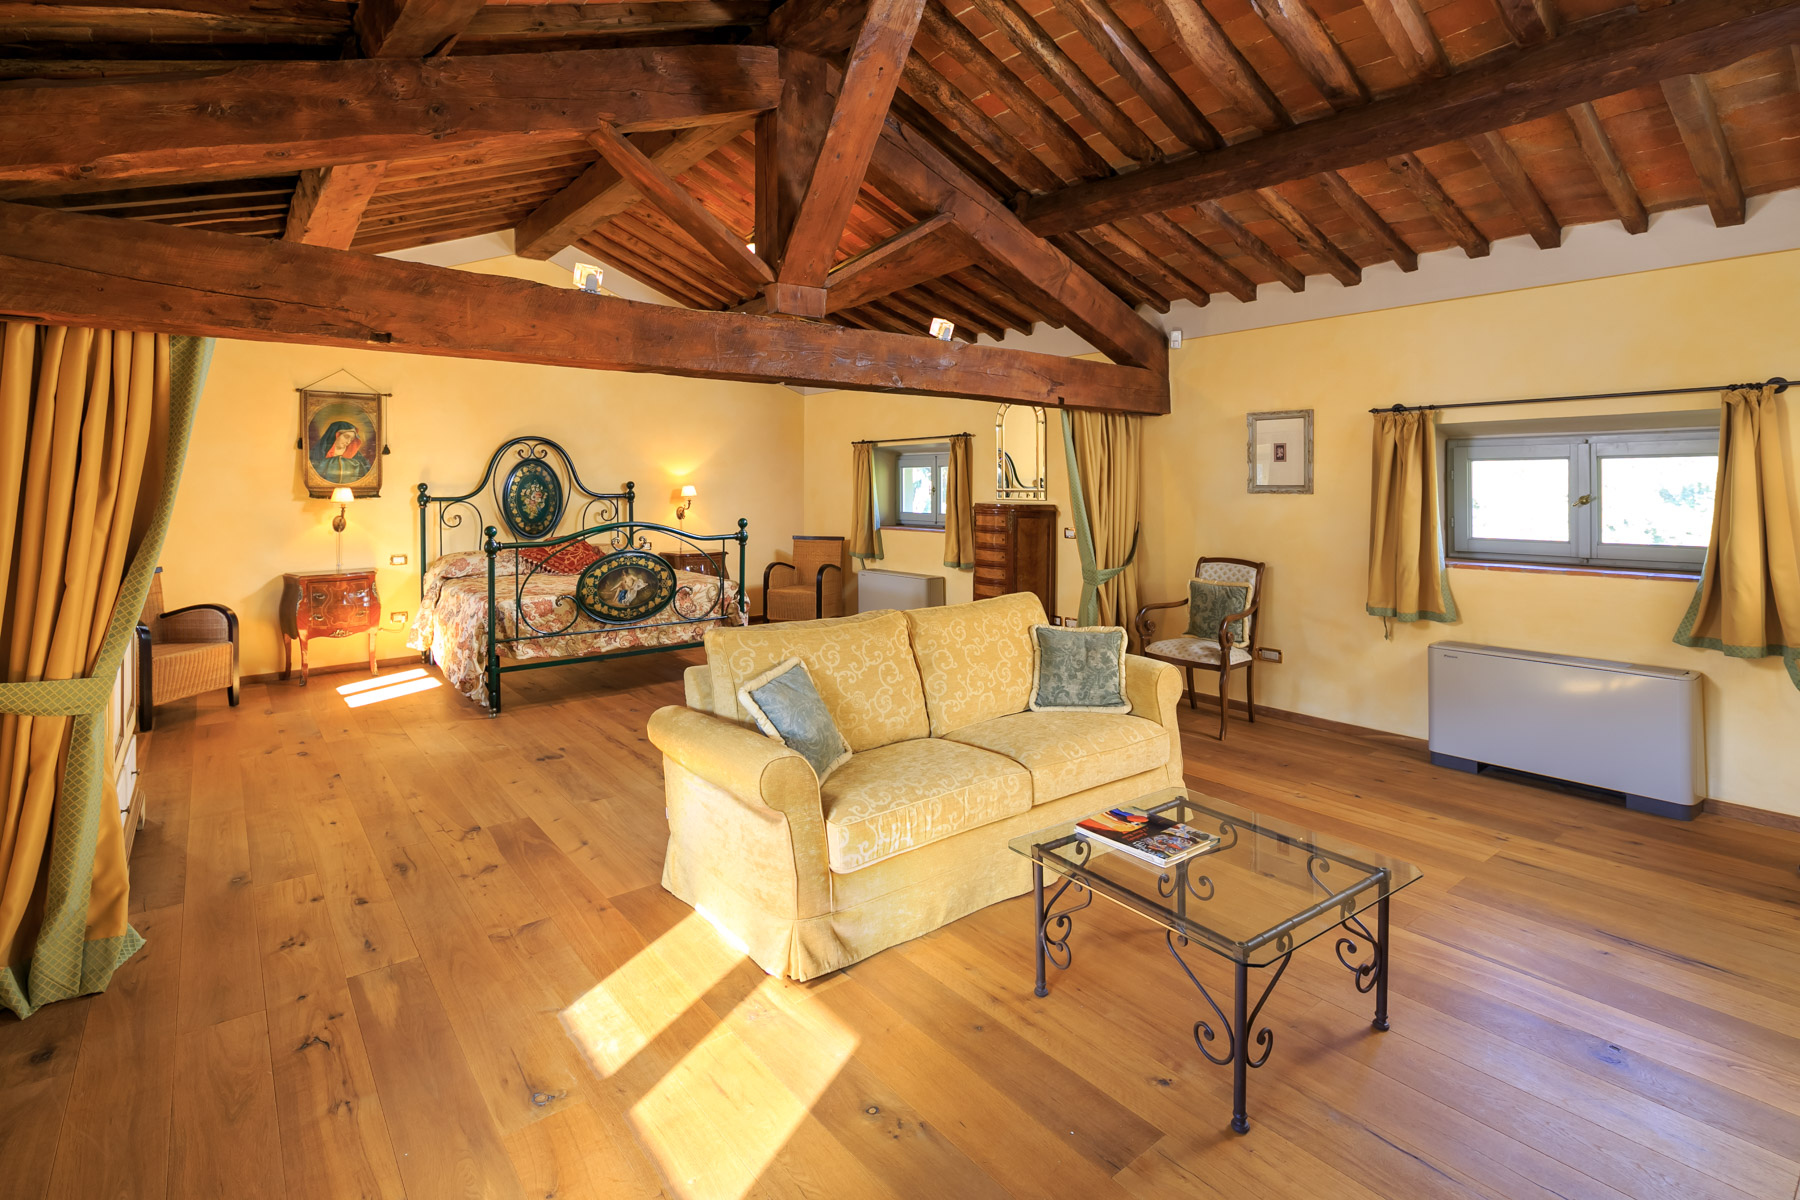 Villa in Vendita a San Giuliano Terme: 5 locali, 2755 mq - Foto 18